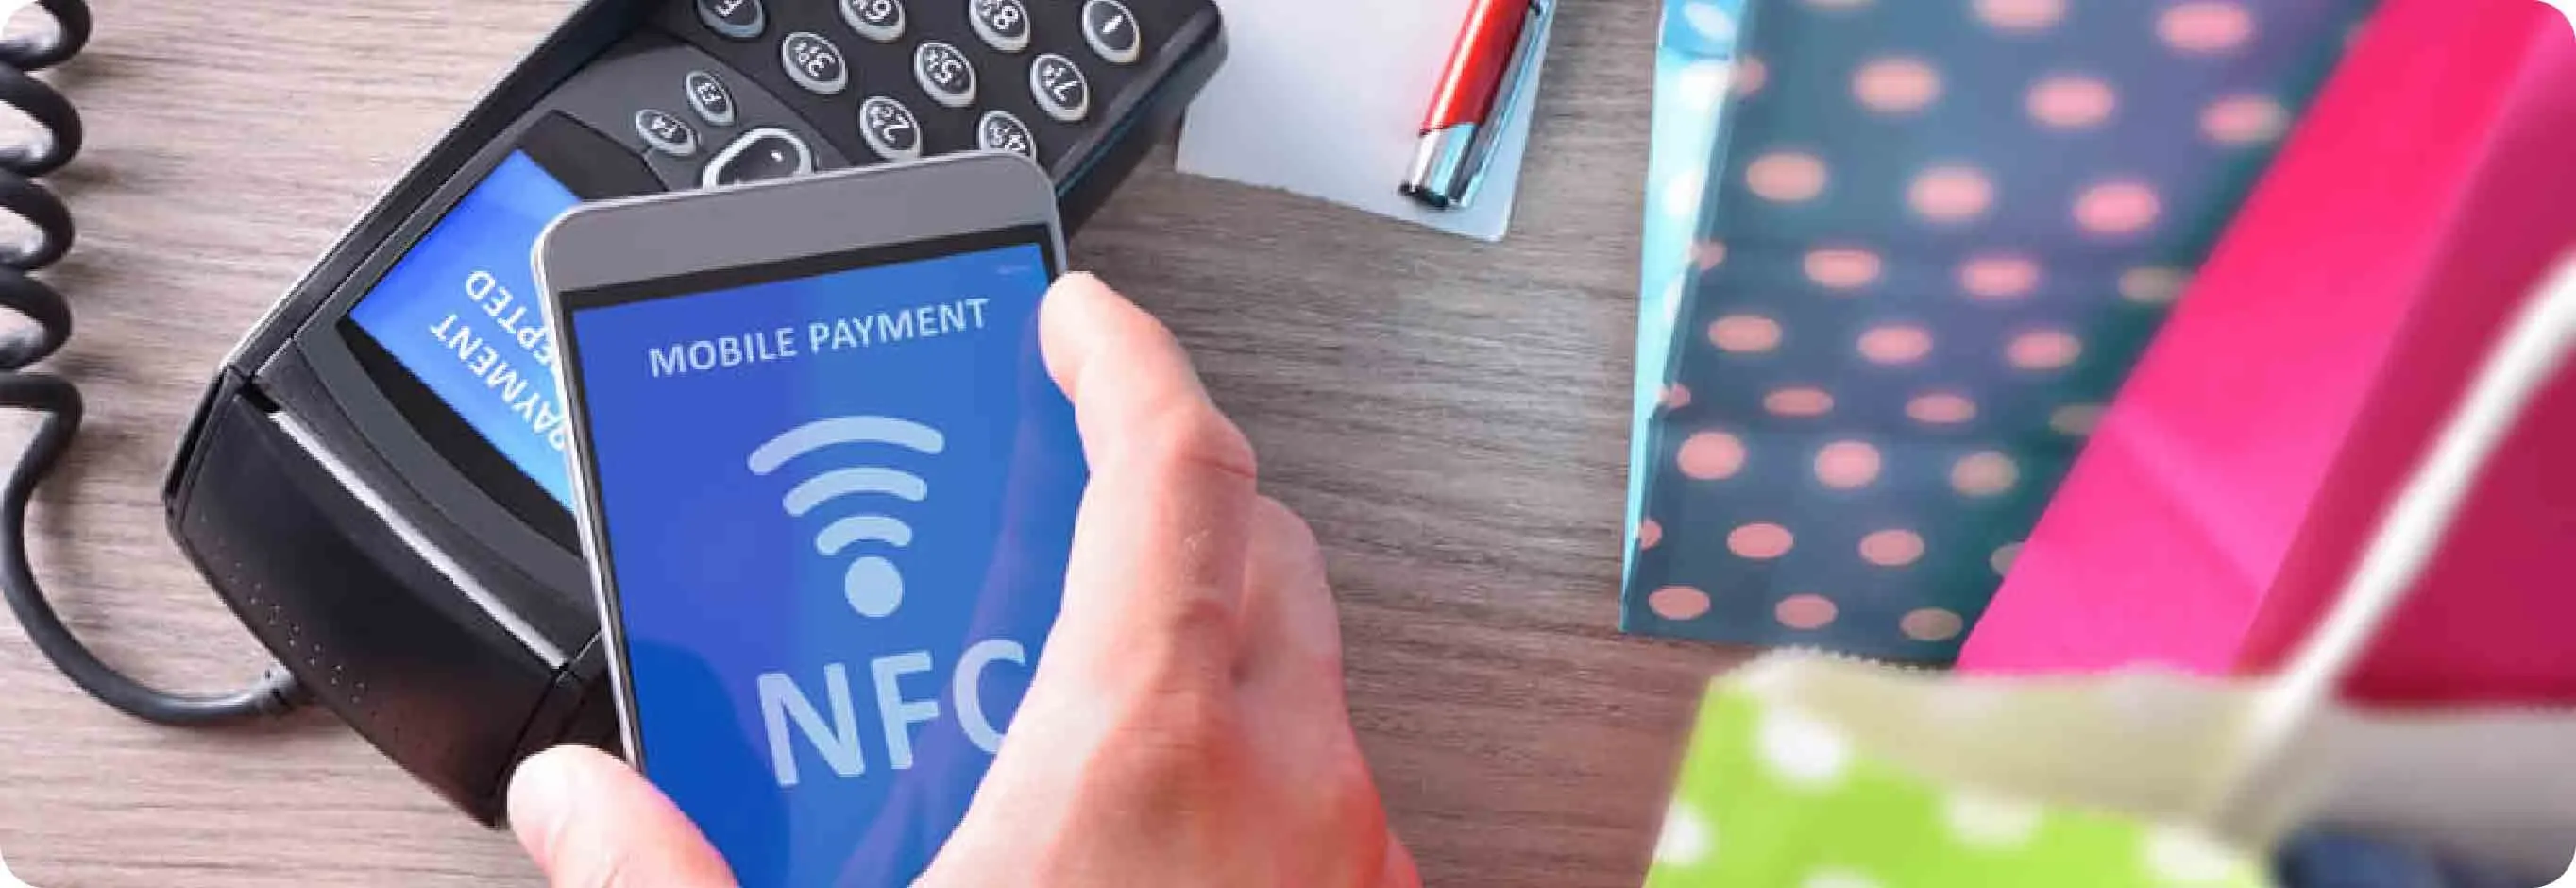 Menulux Restoran Yazılımı - Online Ödeme Sistemleri - NFC Teknolojisi